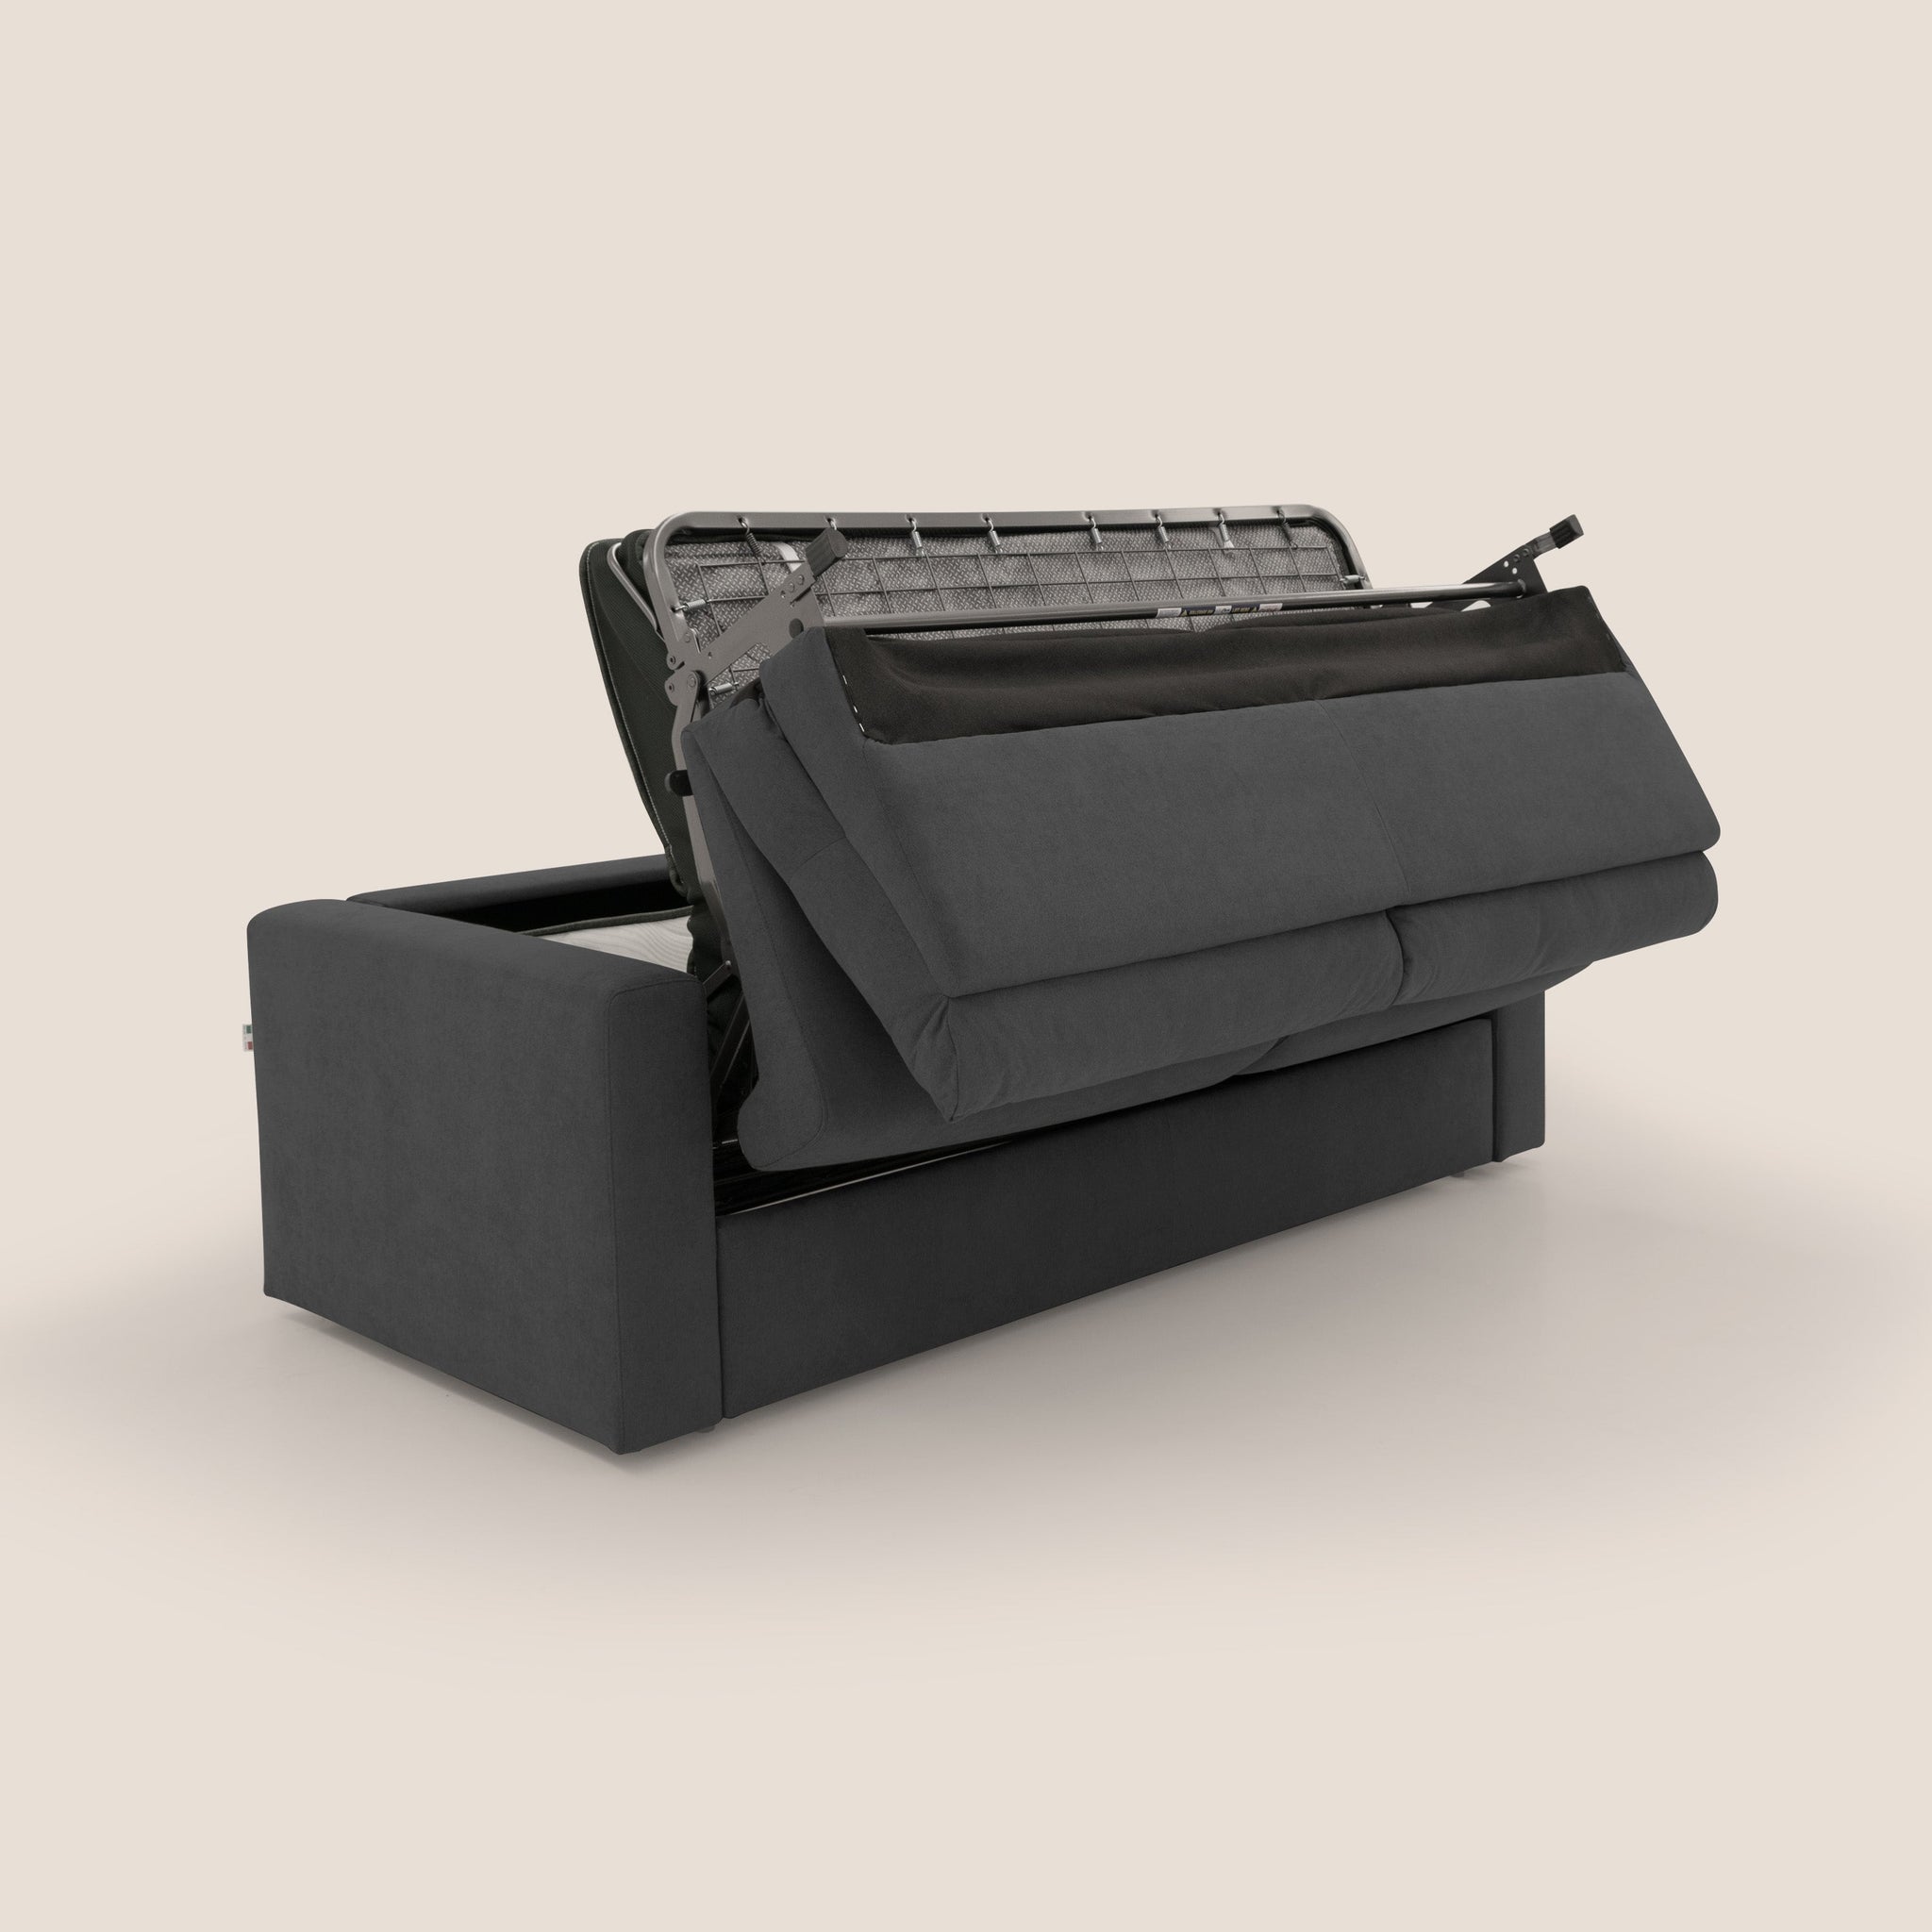 Paloma canapé convertible avec matelas de 18 cm en Aloe Vera en tissu imperméable